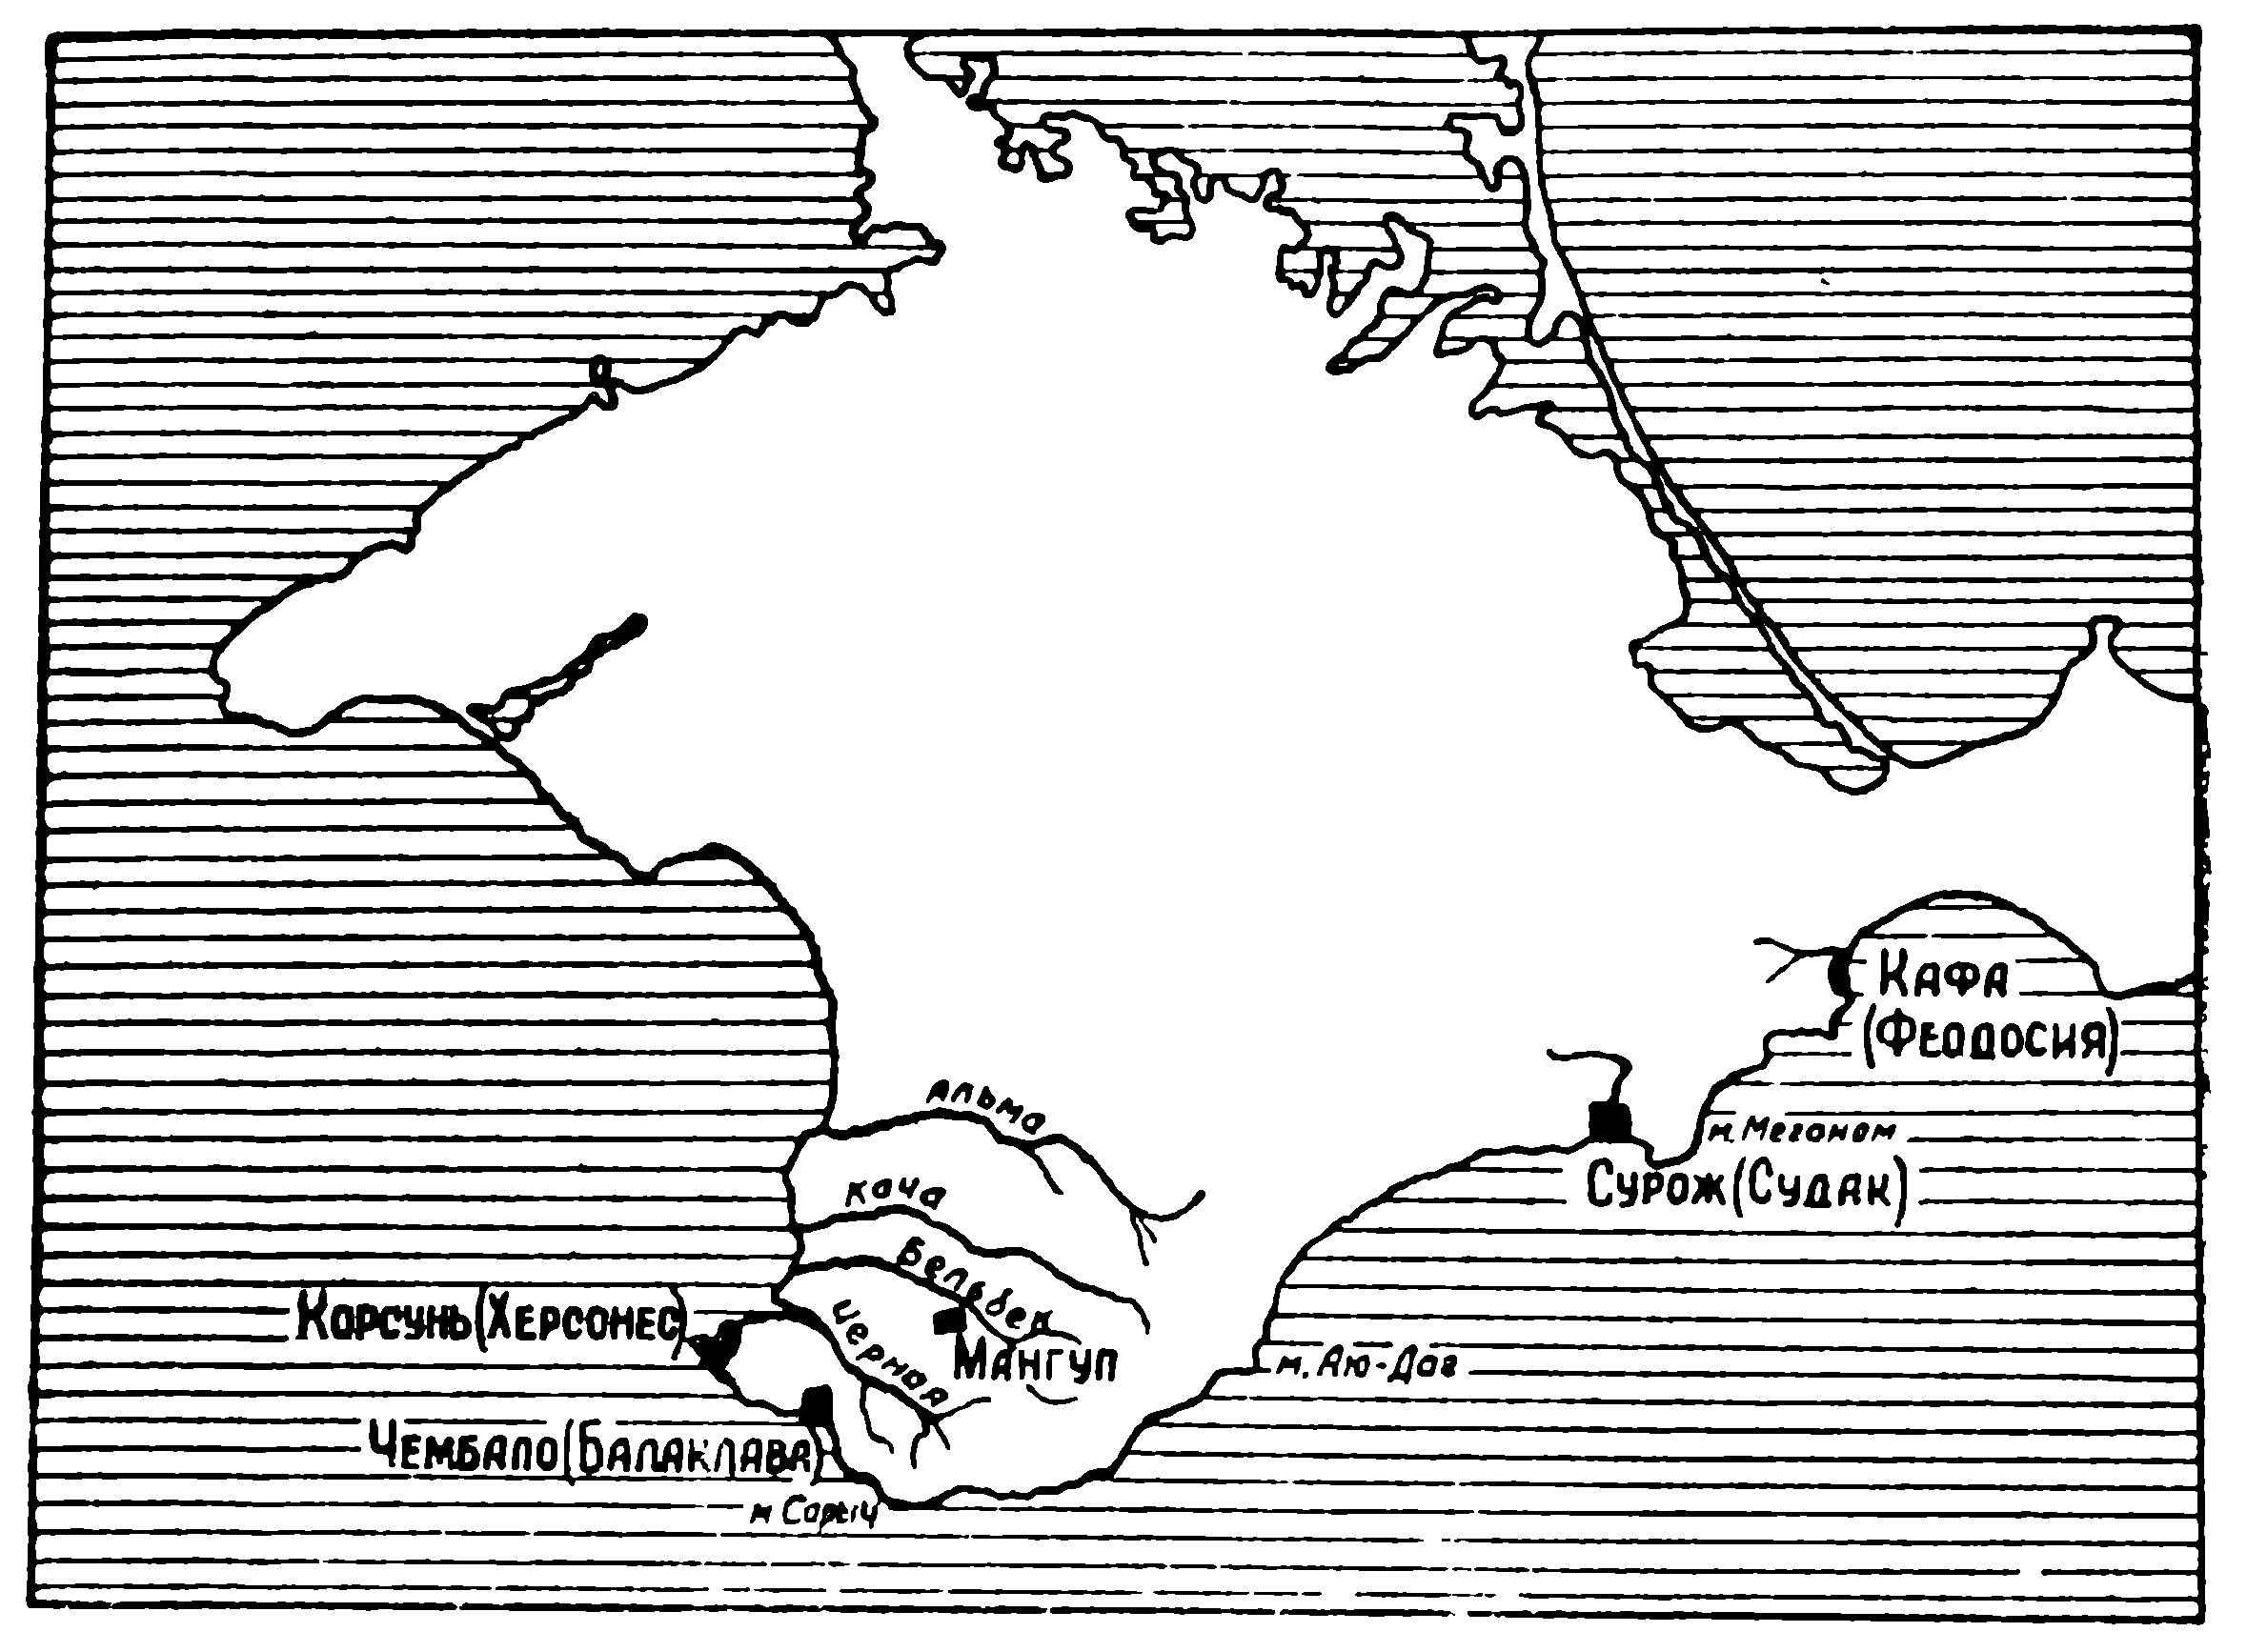 Карта средневекового Крыма (XIII—XV вв.).